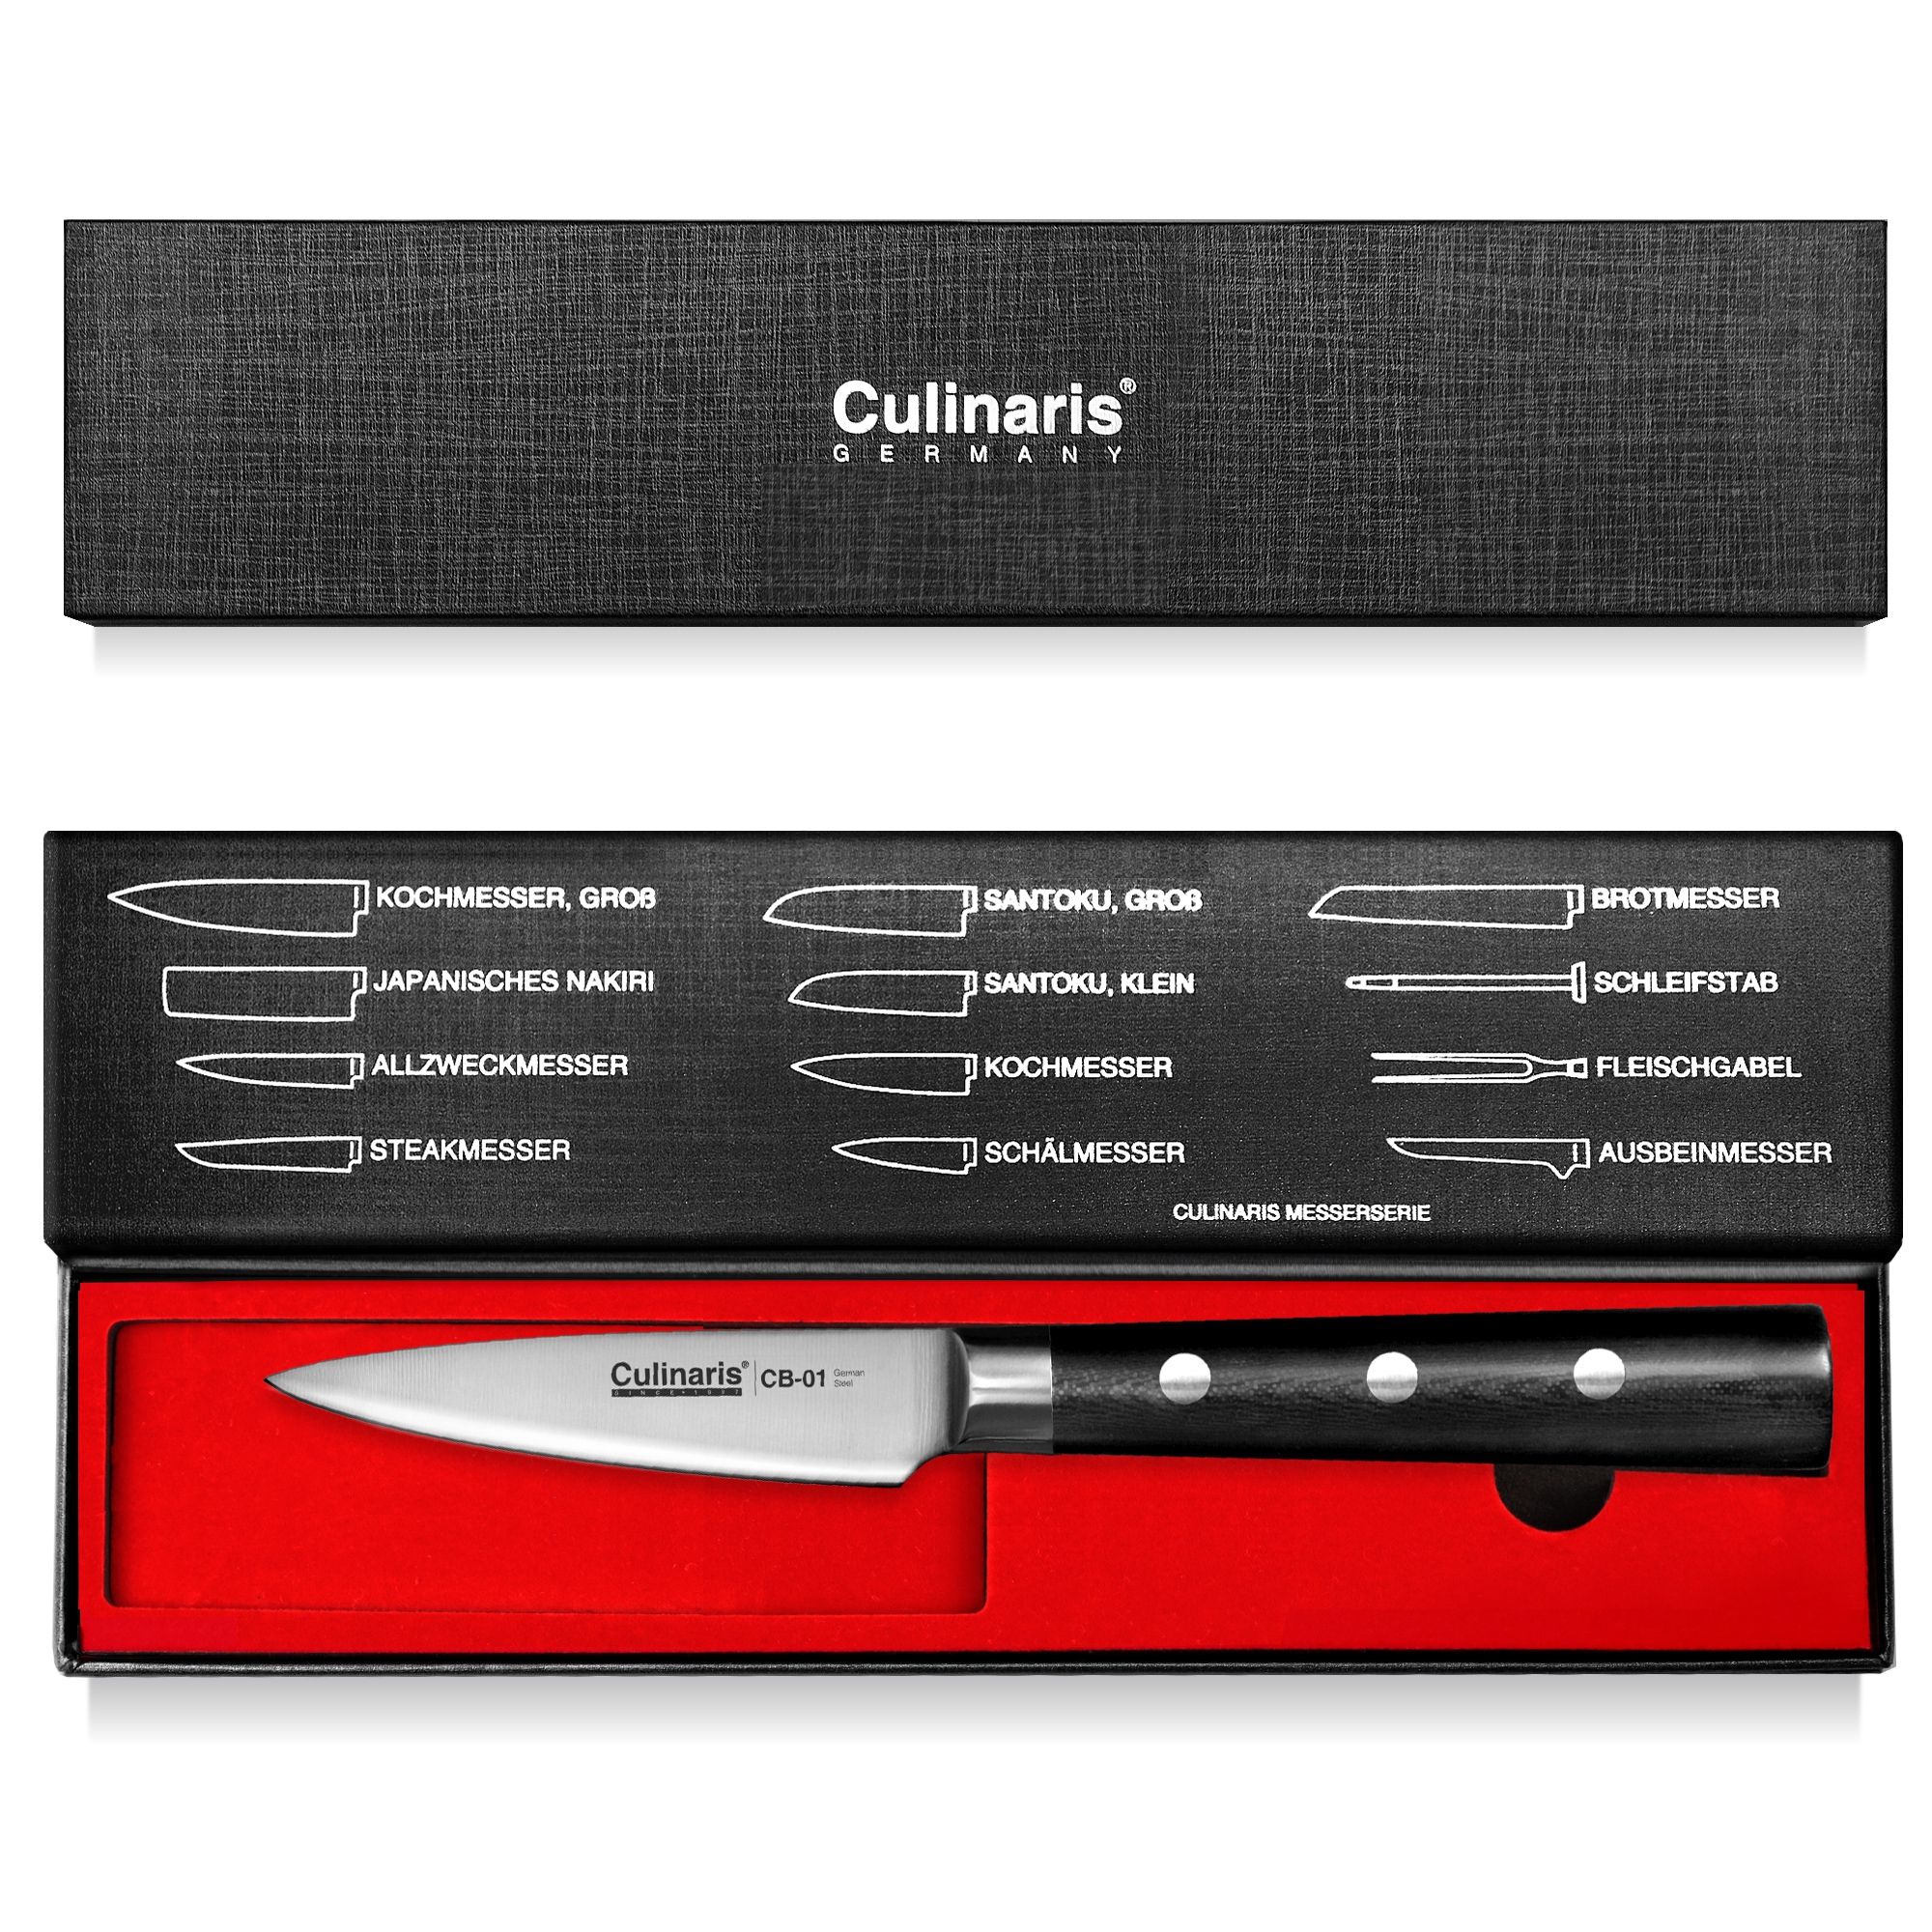 Culinaris - Messer-Set - Kochmesser CB-08 + Schälmesser CB-01 + Ausbeinmesser CB-05 + Messerblock CB-13